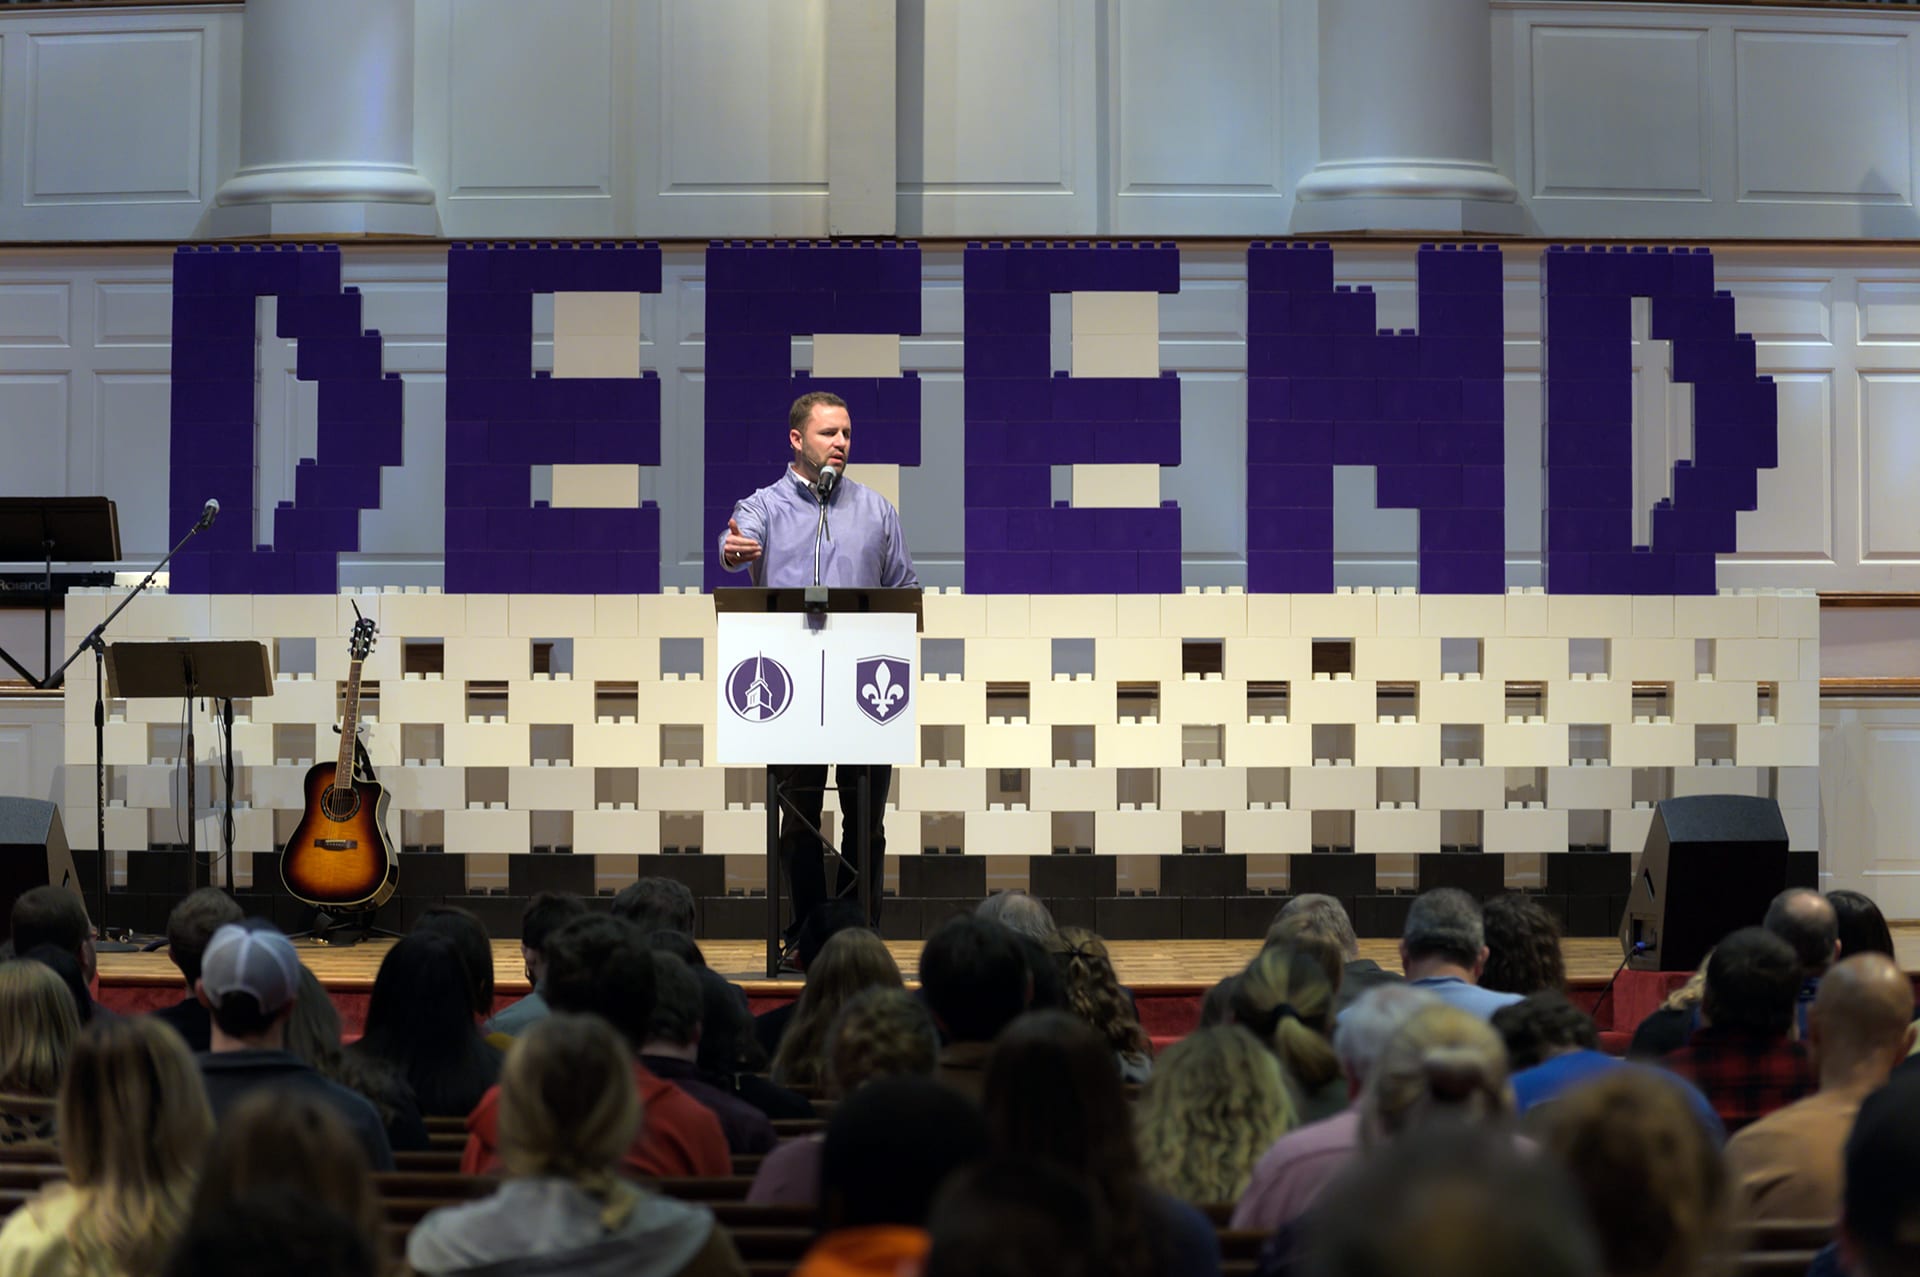 NOBTS apologetics conference addresses tough questions • Biblical Recorder